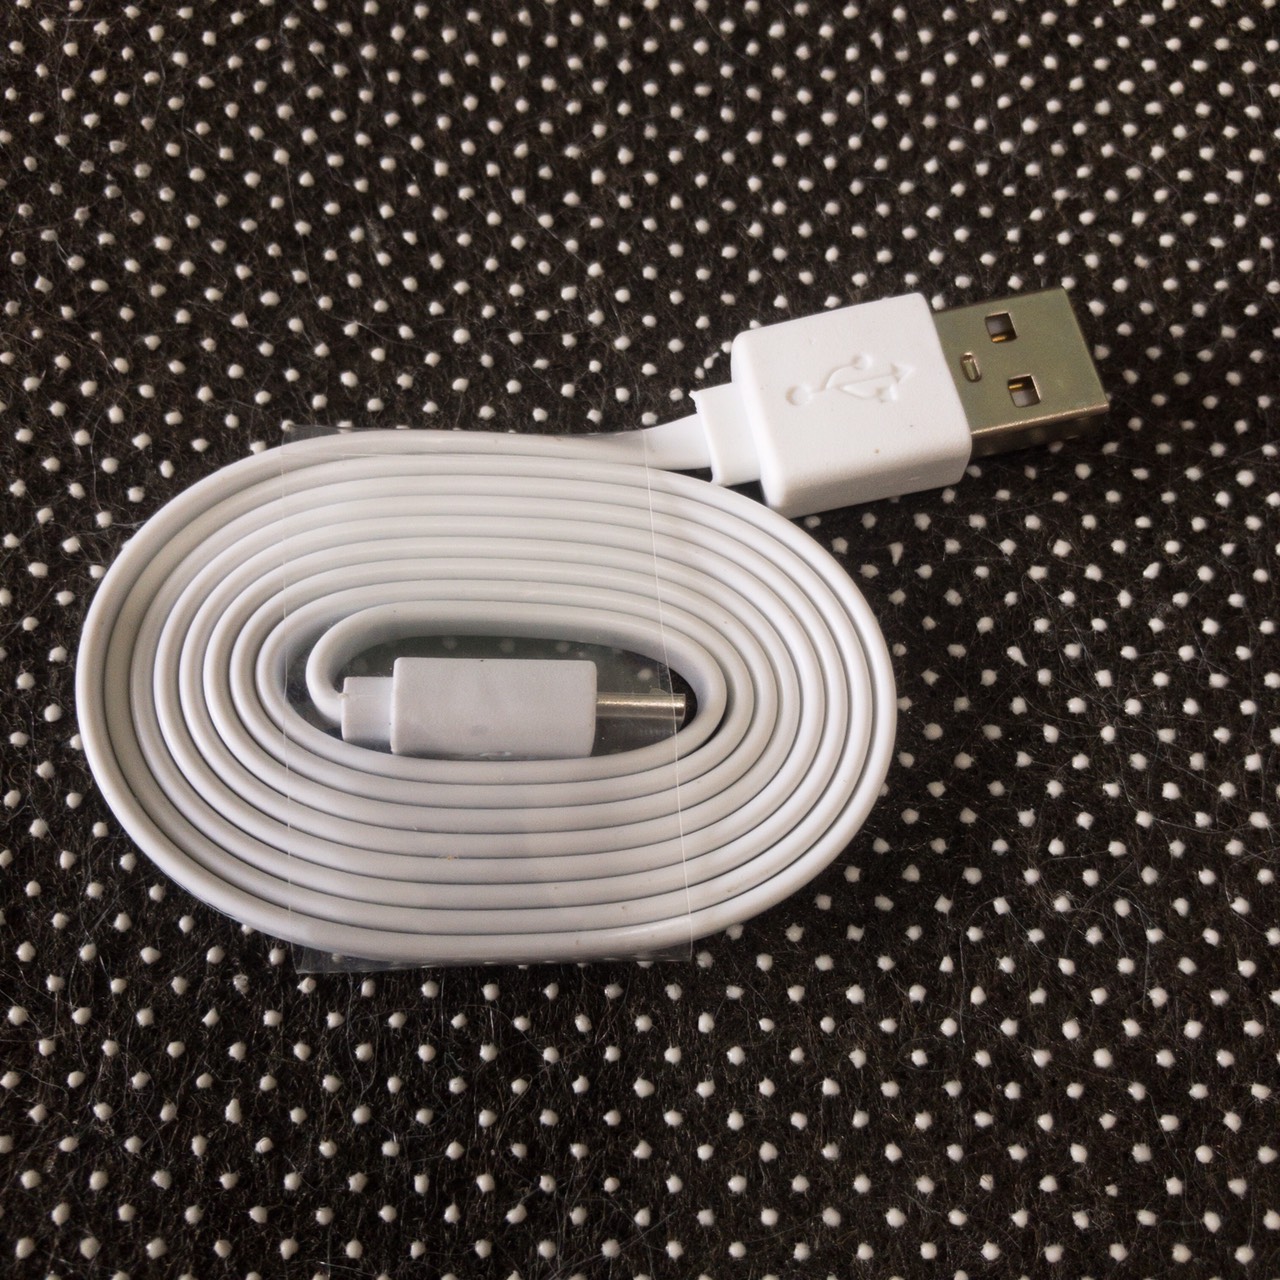 Cáp Sạc Nhanh PEAFLO Cổng Micro USB dùng cho samsung,oppo,realme,xiaomi,vsmart,nokia....- Hàng chính hãng